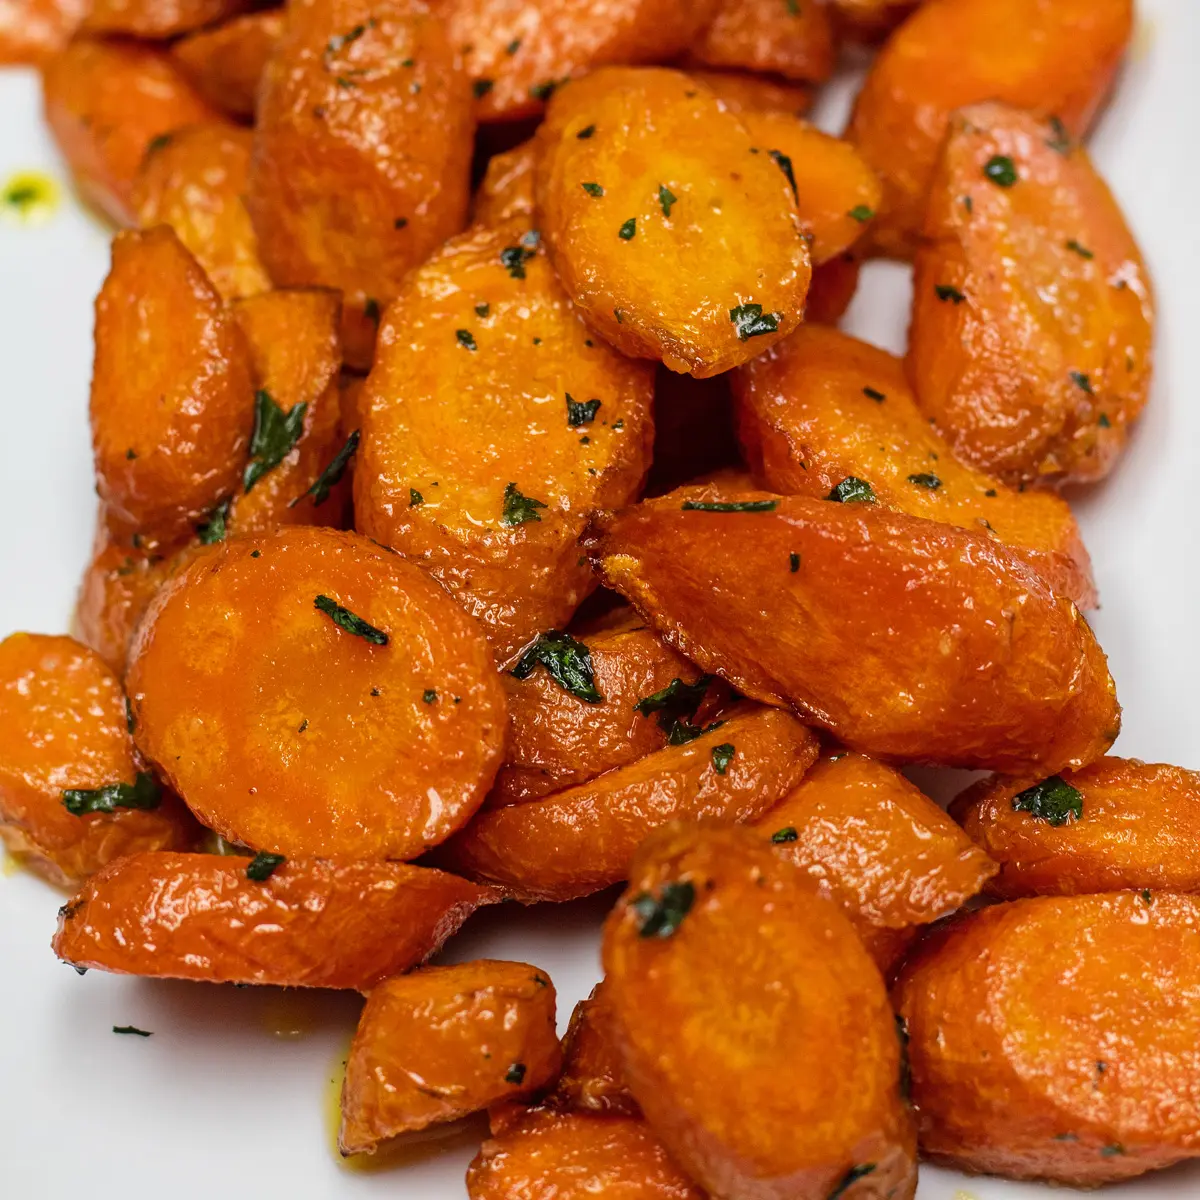 Cenouras da fritadeira de ar fácil, cozidas na perfeição e servidas em um prato branco.